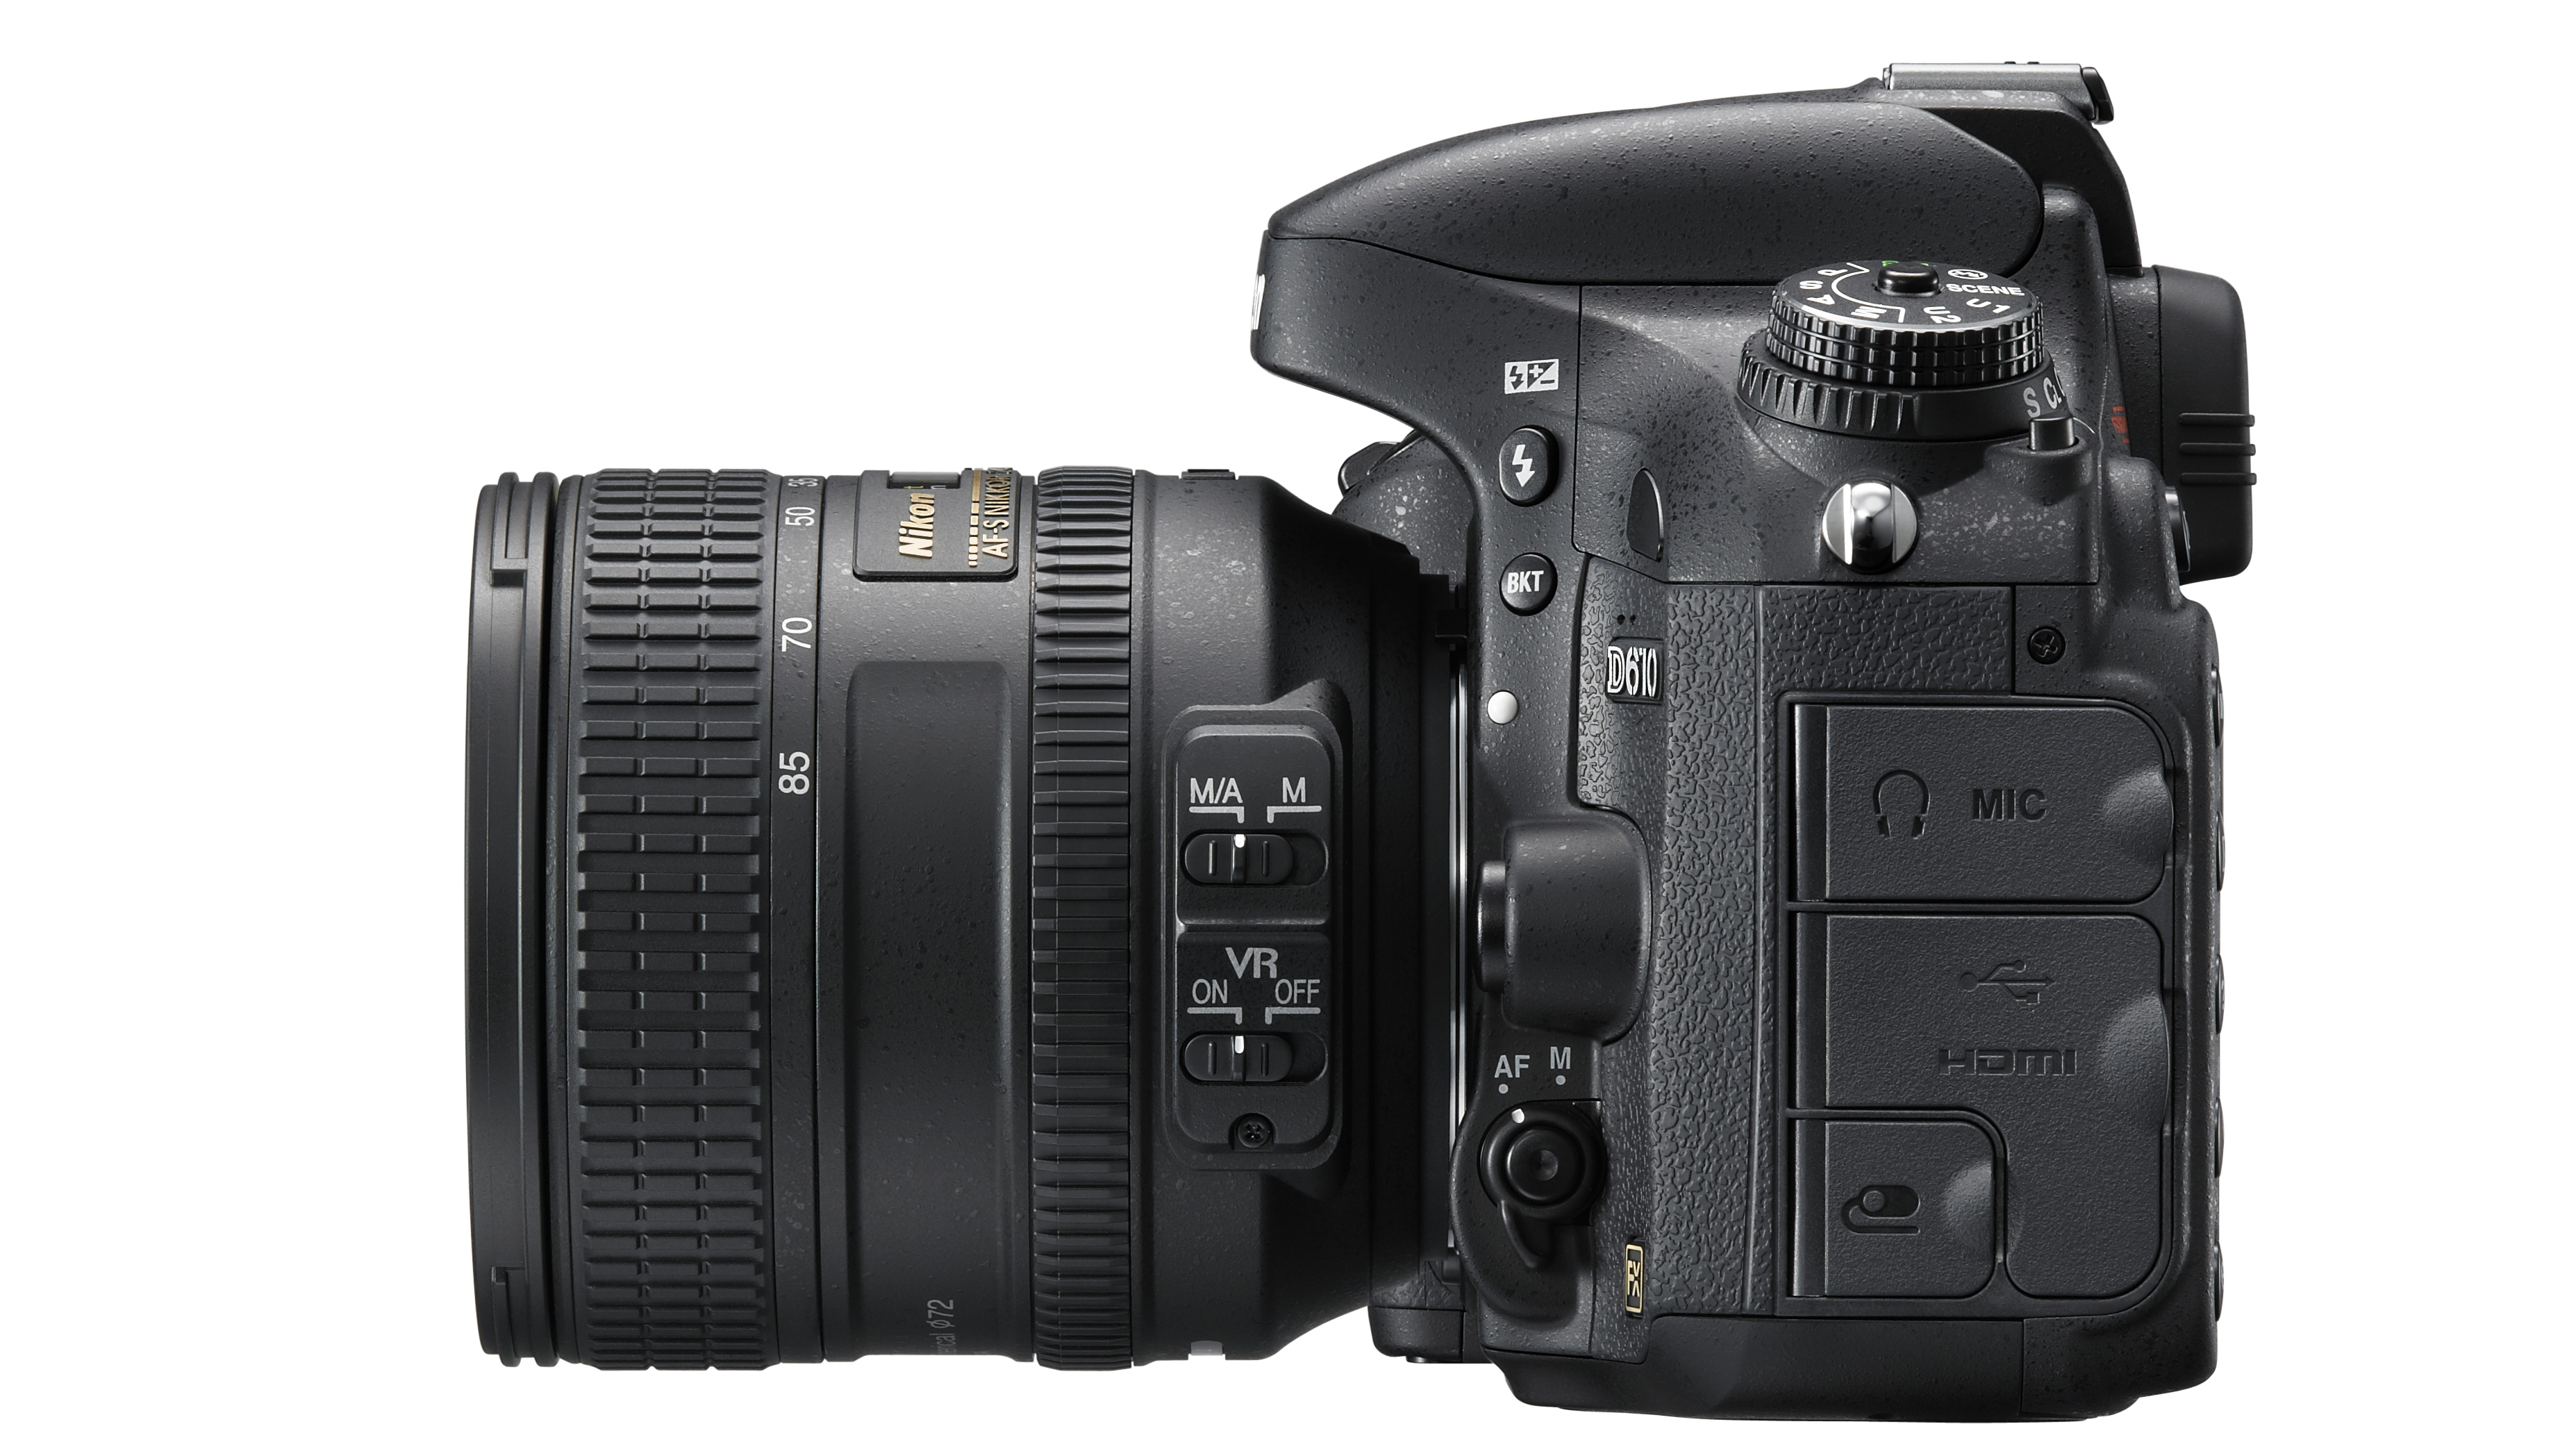 Nikon D610 review